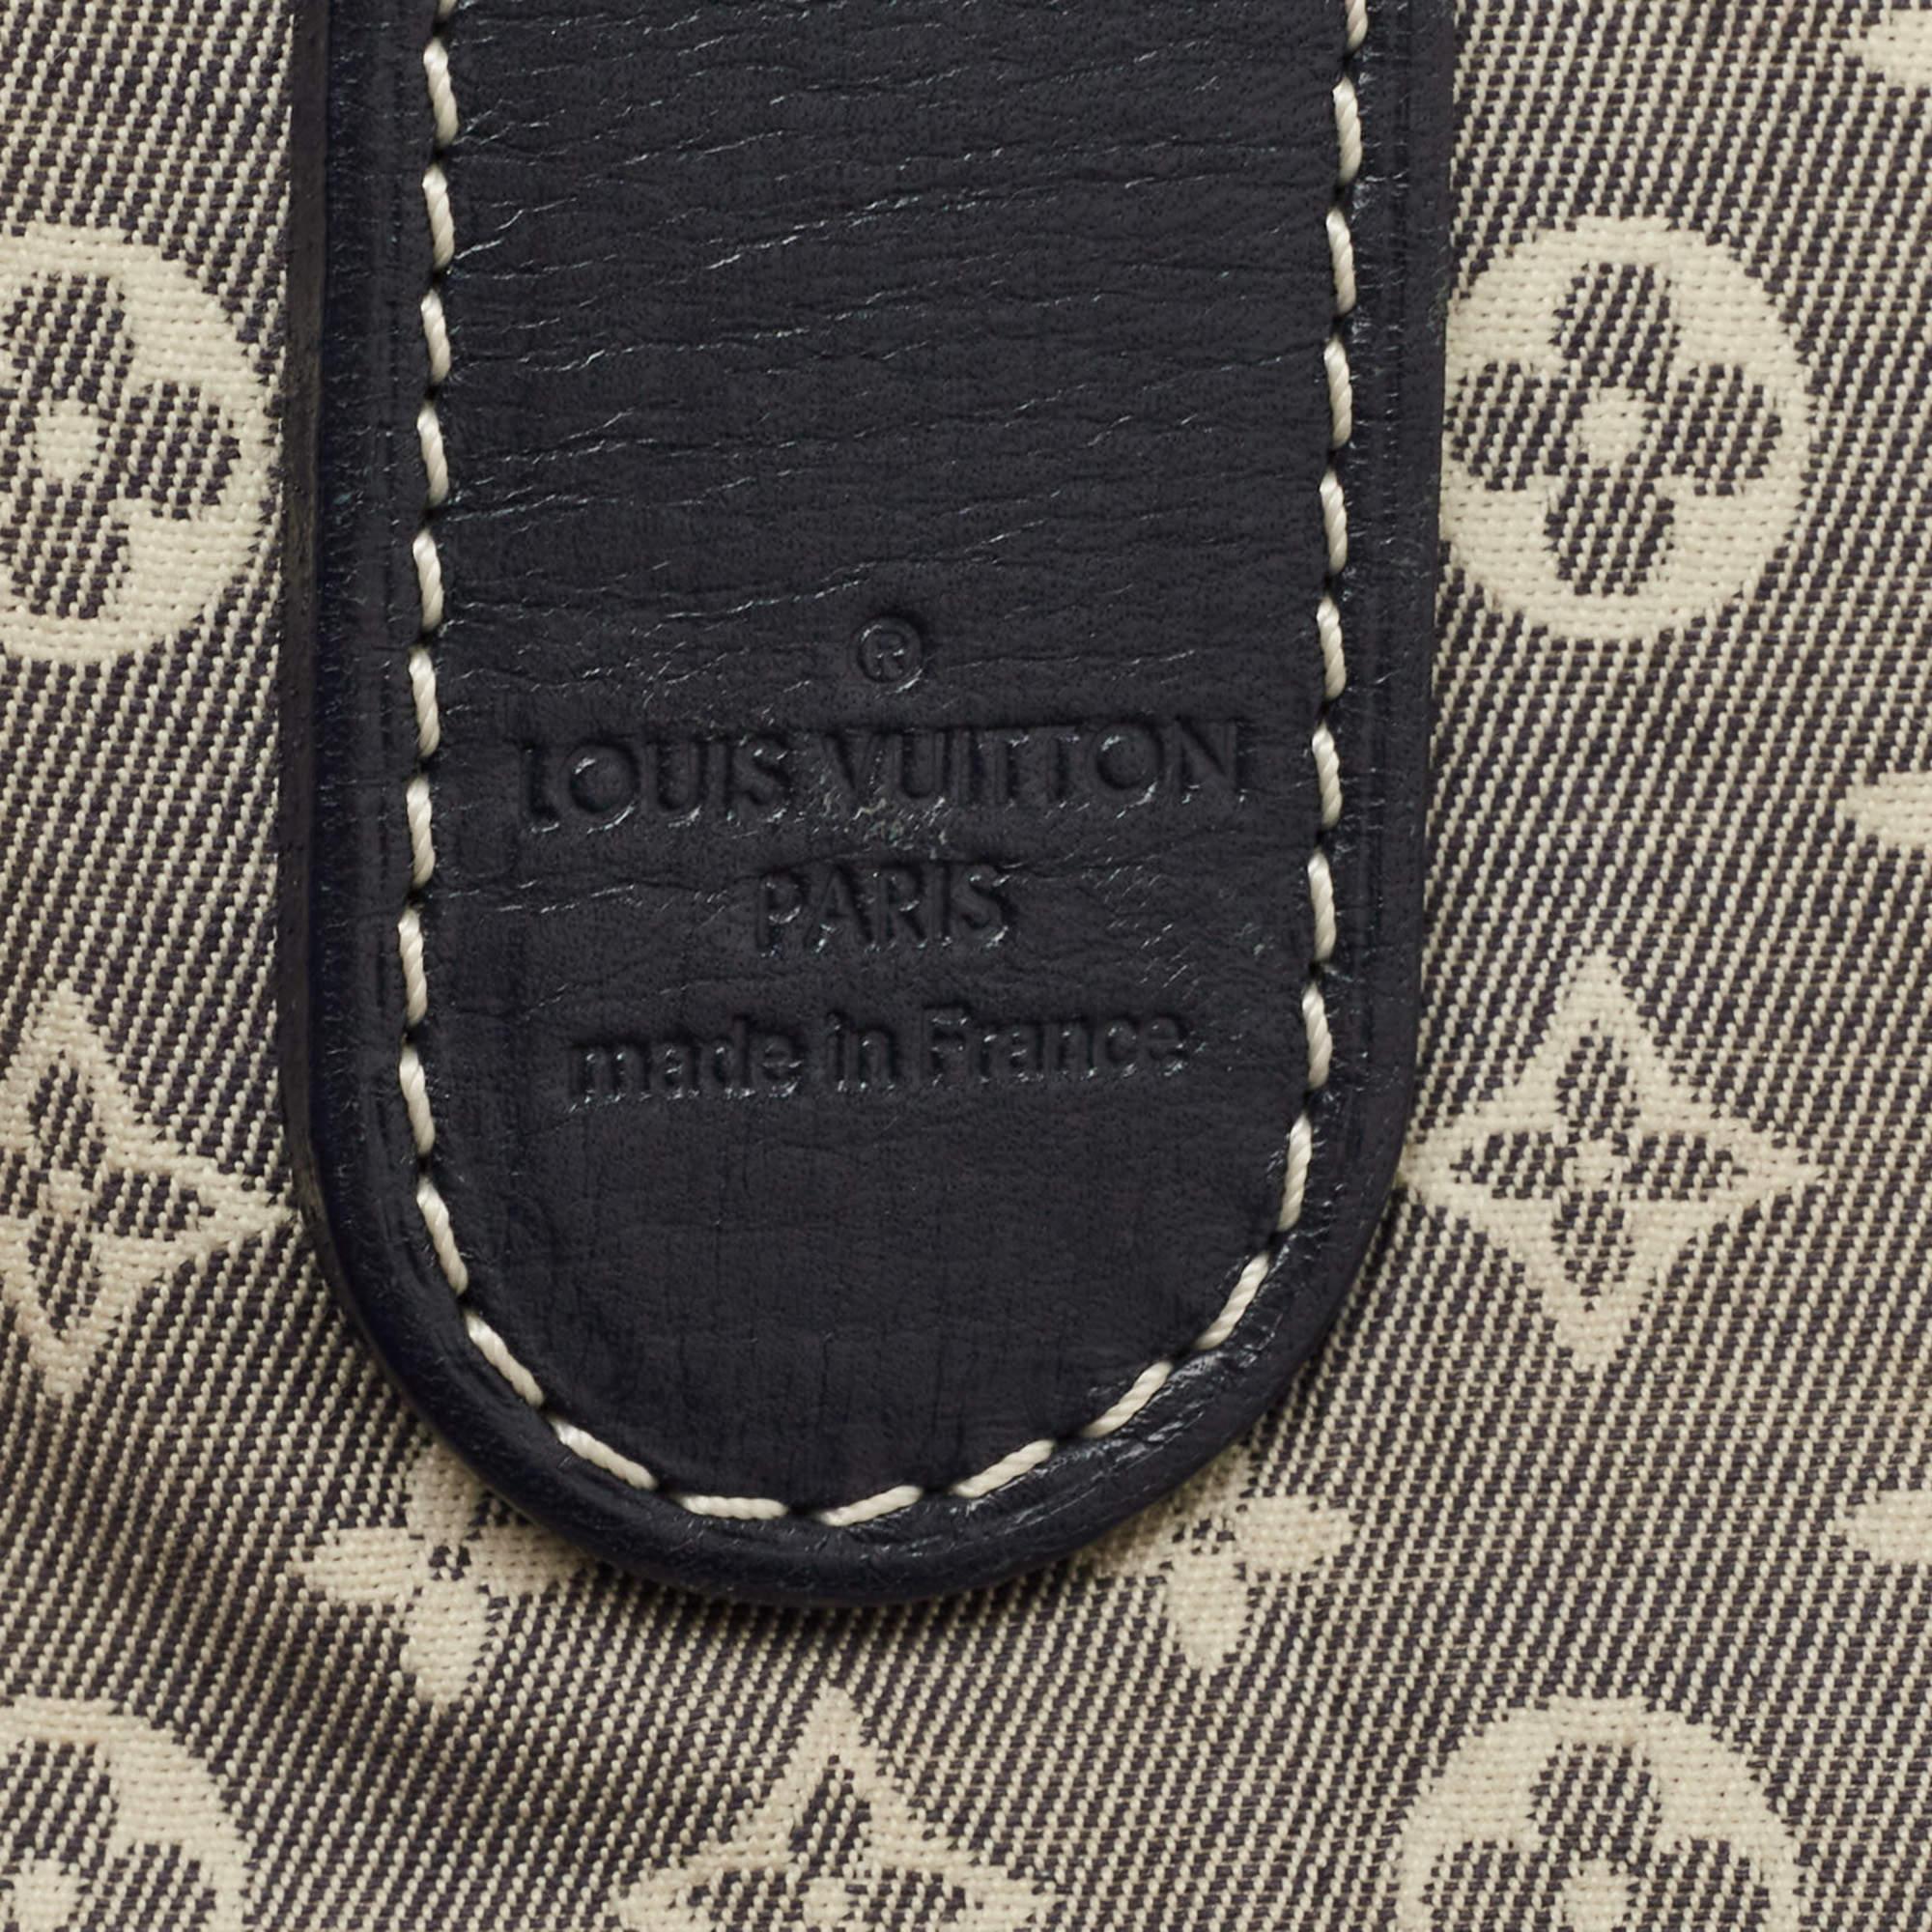 Women's Louis Vuitton Encre Monogram Idylle Romance Bag For Sale